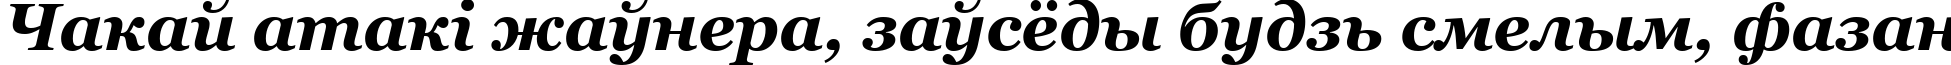 Пример написания шрифтом font278 текста на белорусском